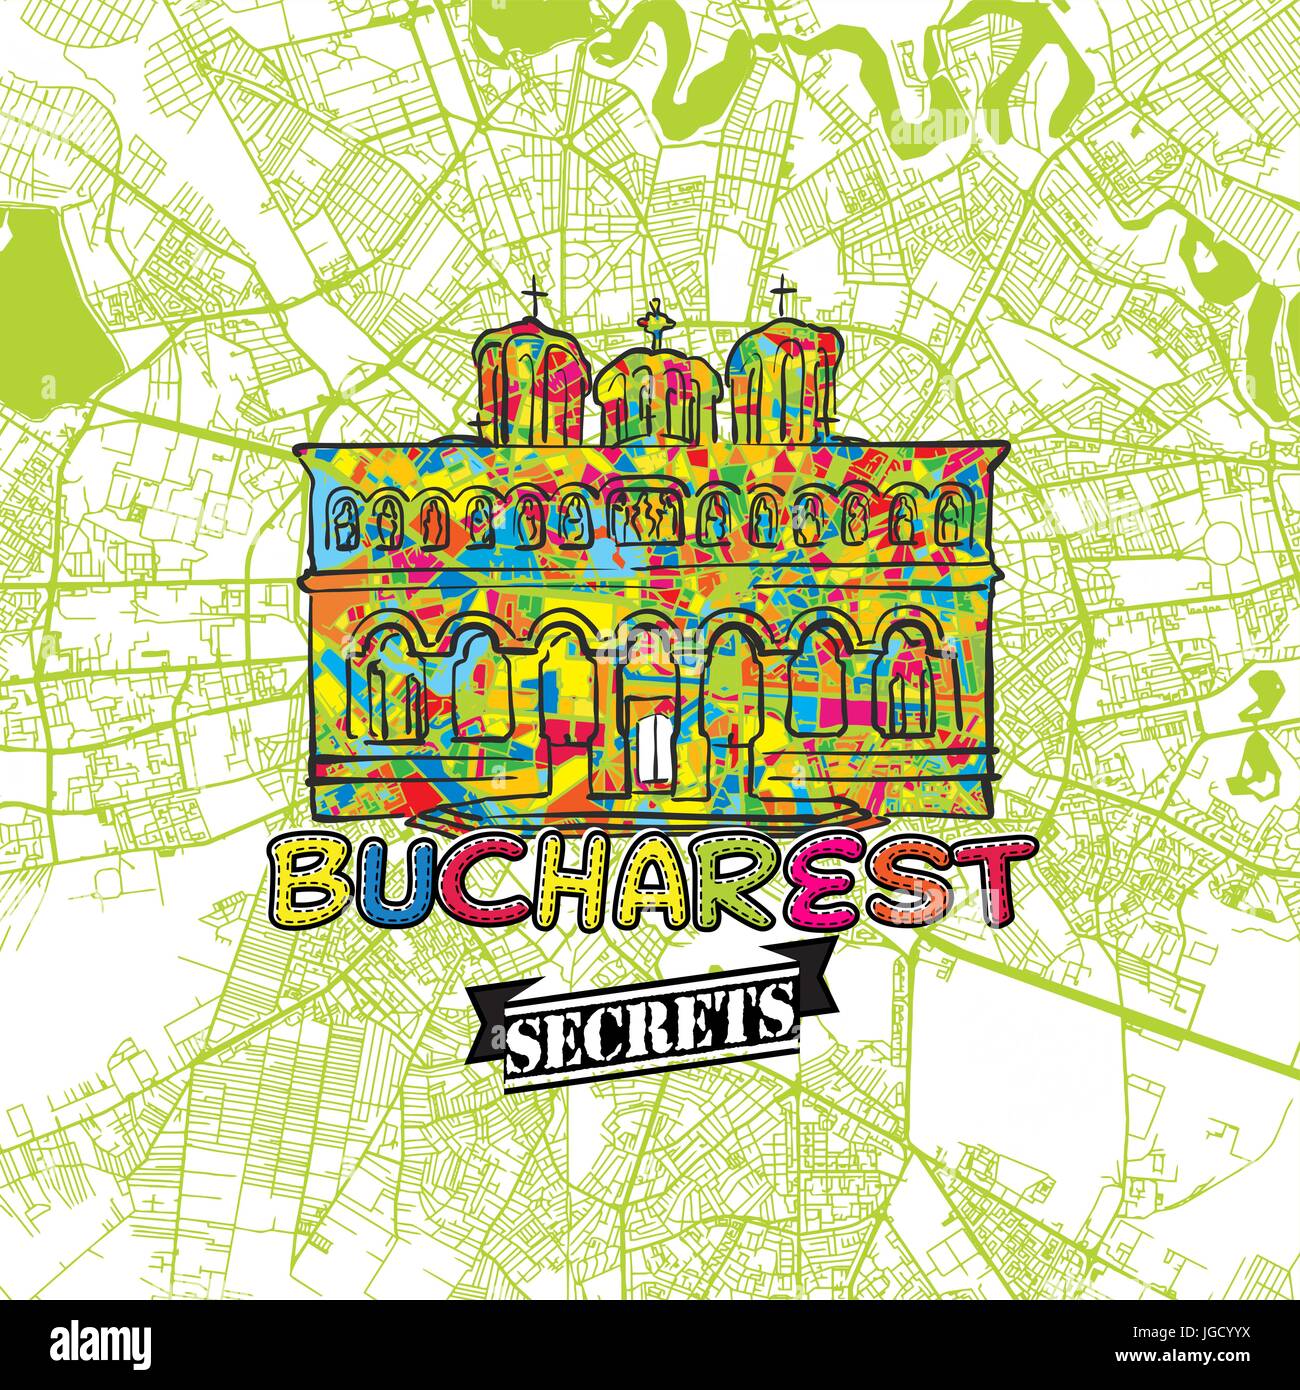 Bukarest Reise Geheimnisse Art Map für die Zuordnung von Experten und Reiseführer. Handgemachte Stadt Logo, Typo-Abzeichen und Hand gezeichnete Vektorbild auf Top sind gruppiert Stock Vektor